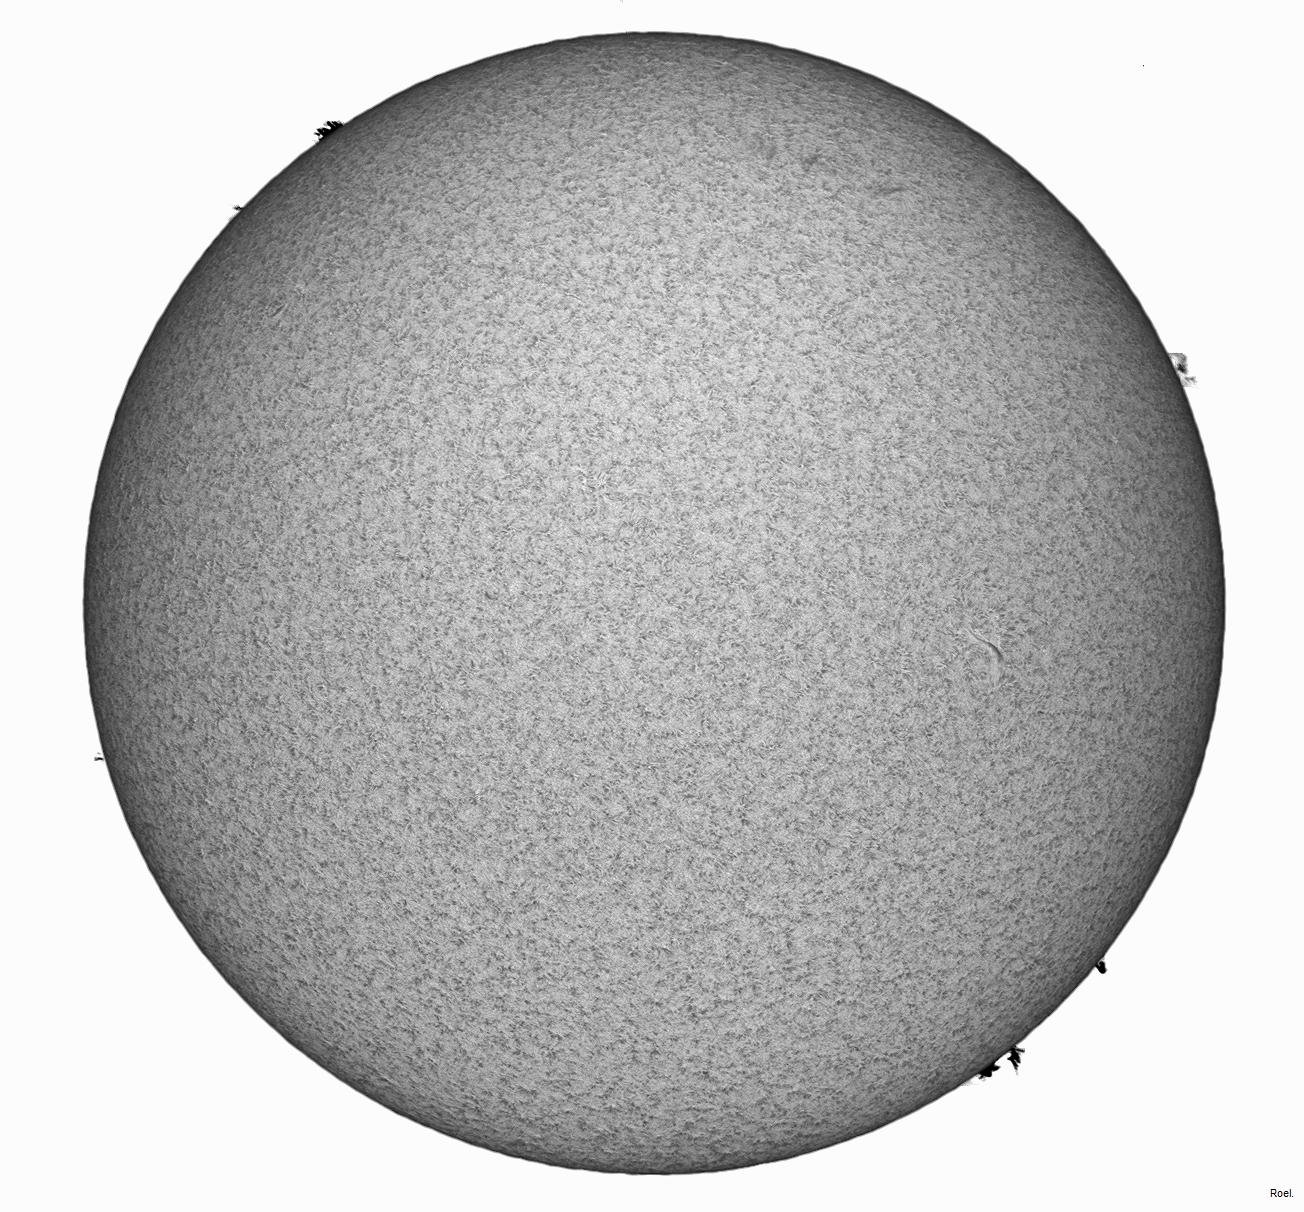 Sol del 15 de enero 2020-Solarmax 90-DS-BF30-1pos-neg.jpg